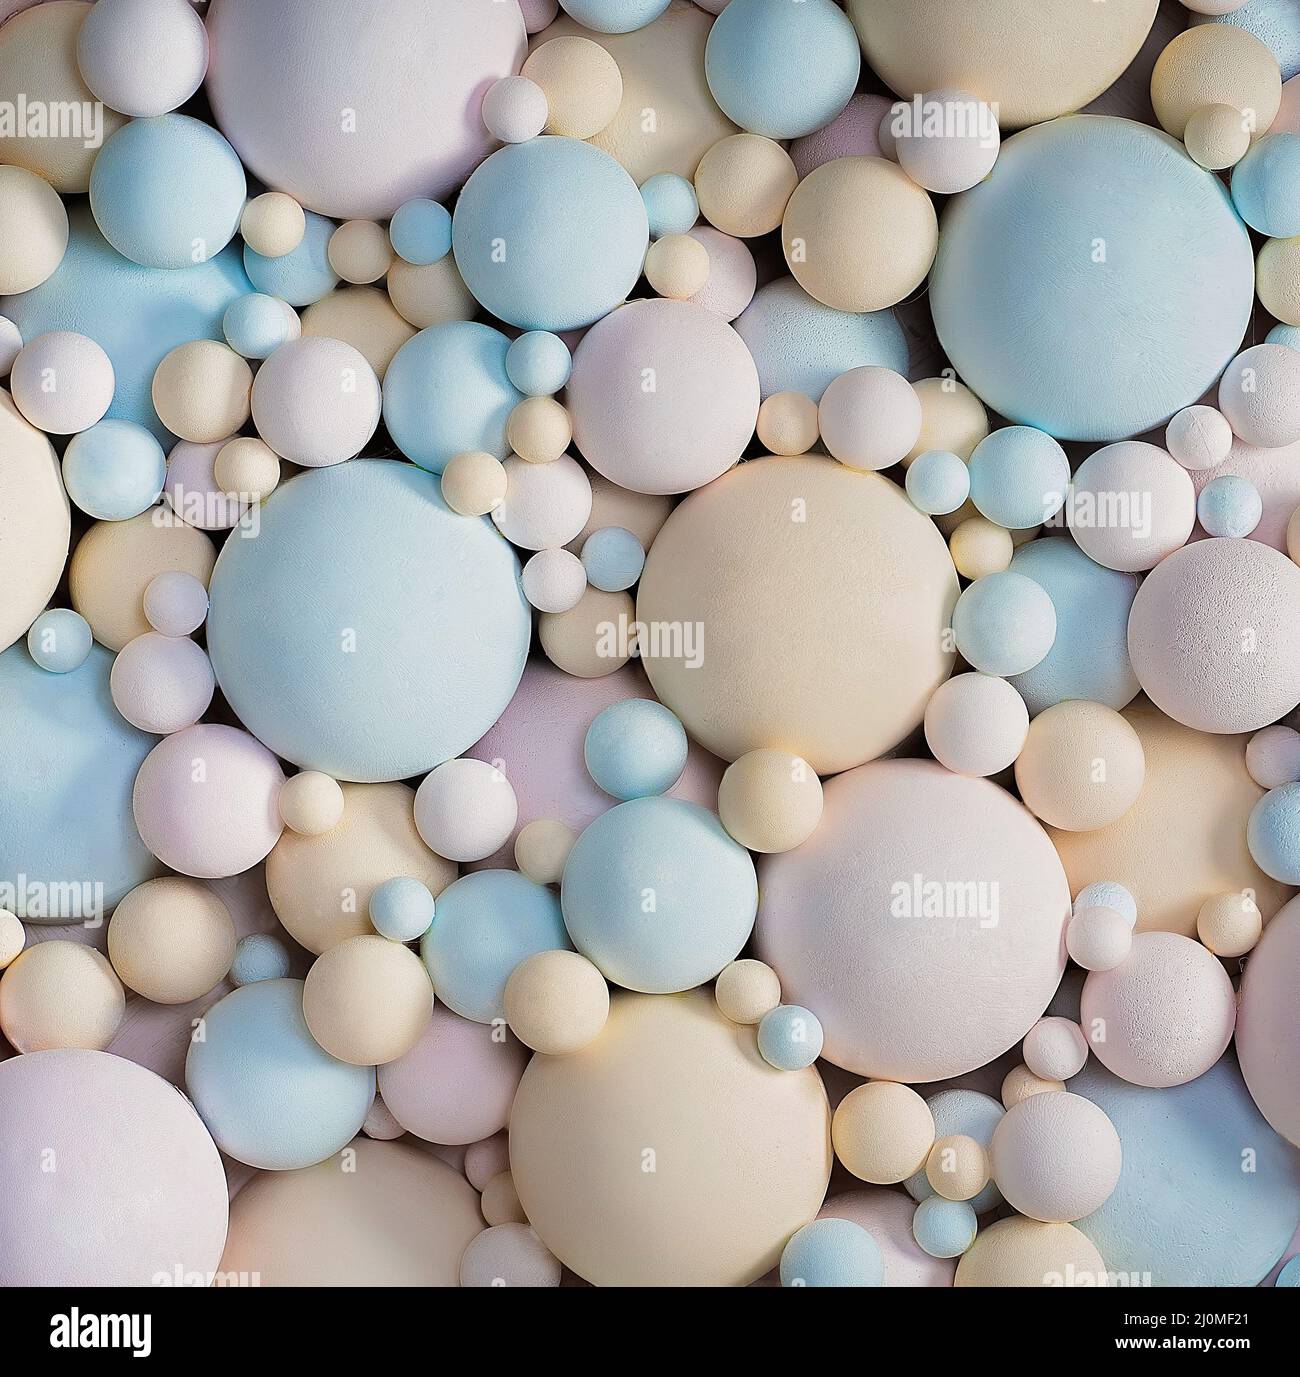 Abstract 3D sfondo con colori pastello Palline Matte. Delicate Blue, Pink, Beige Palline di diverse misure di forma sferica. Testo Foto Stock